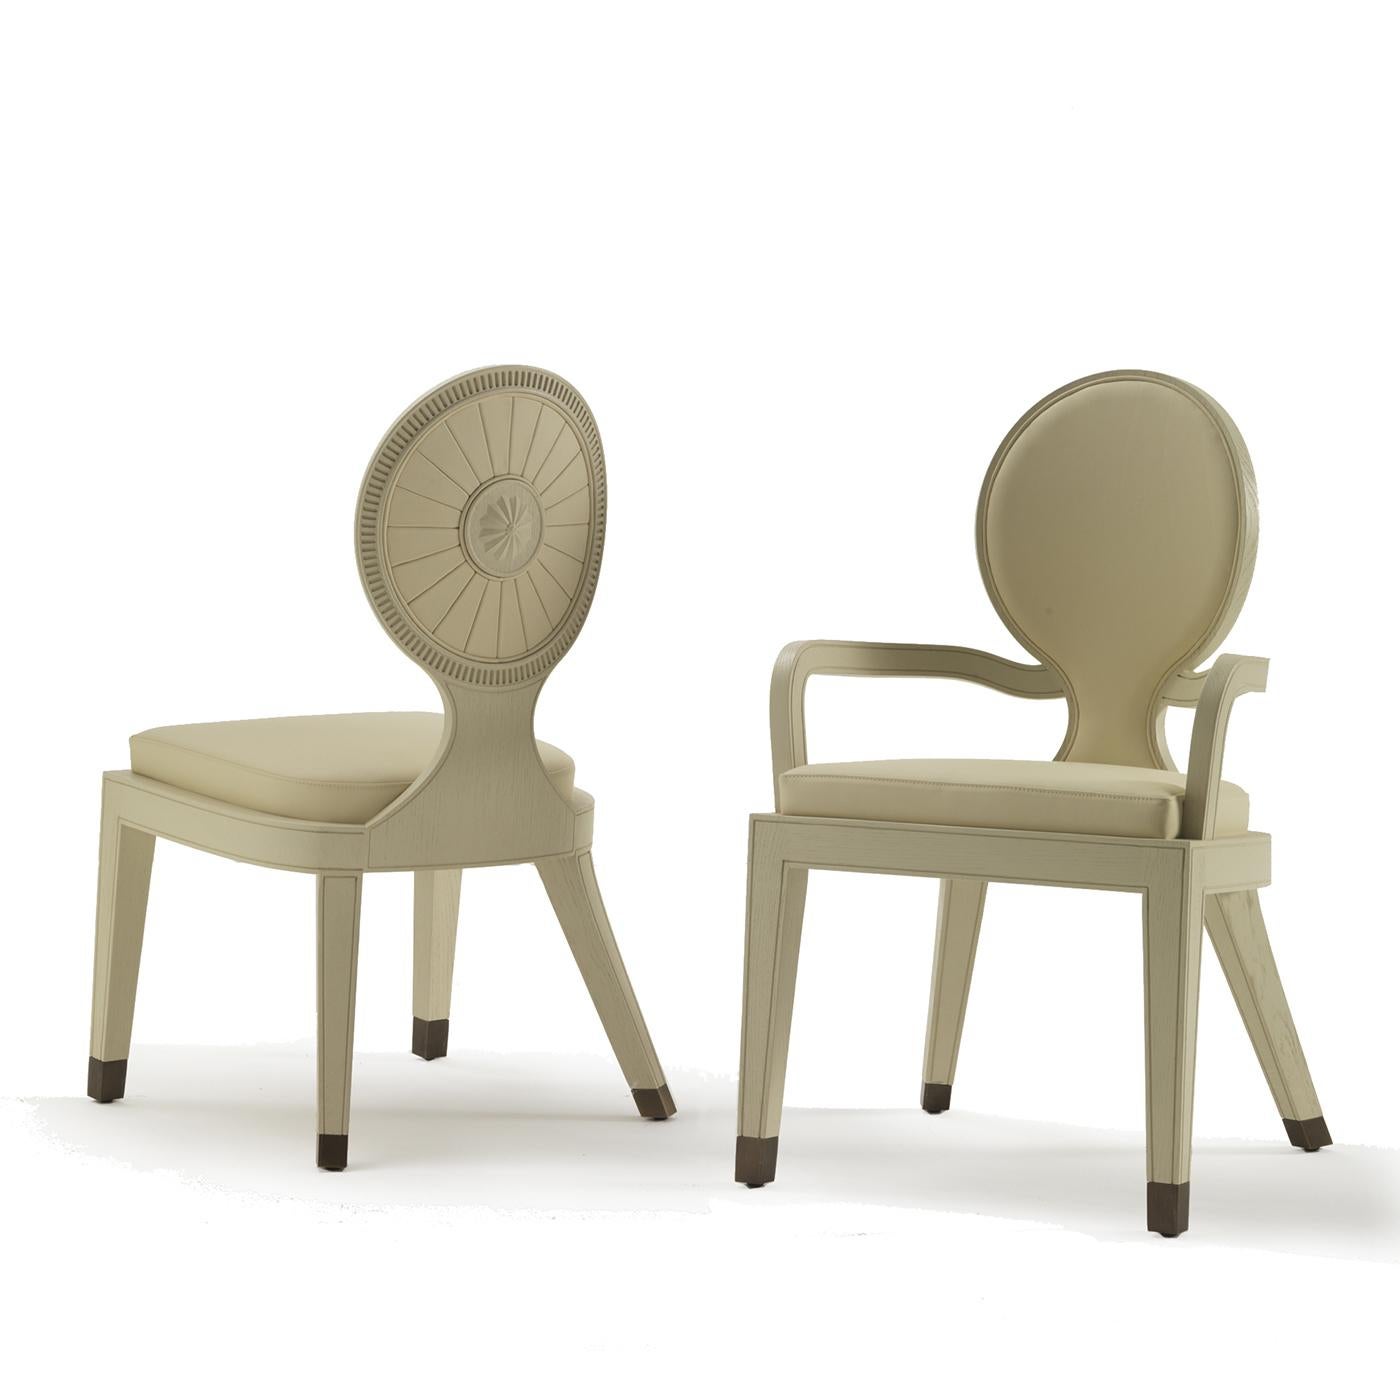 Cette chaise étonnante est un superbe exemple d'artisanat exquis et de sensibilité moderne. Inspirée d'un design traditionnel, sa structure en bois présente une finition en chêne naturel qui contraste de façon saisissante avec les embouts en laiton